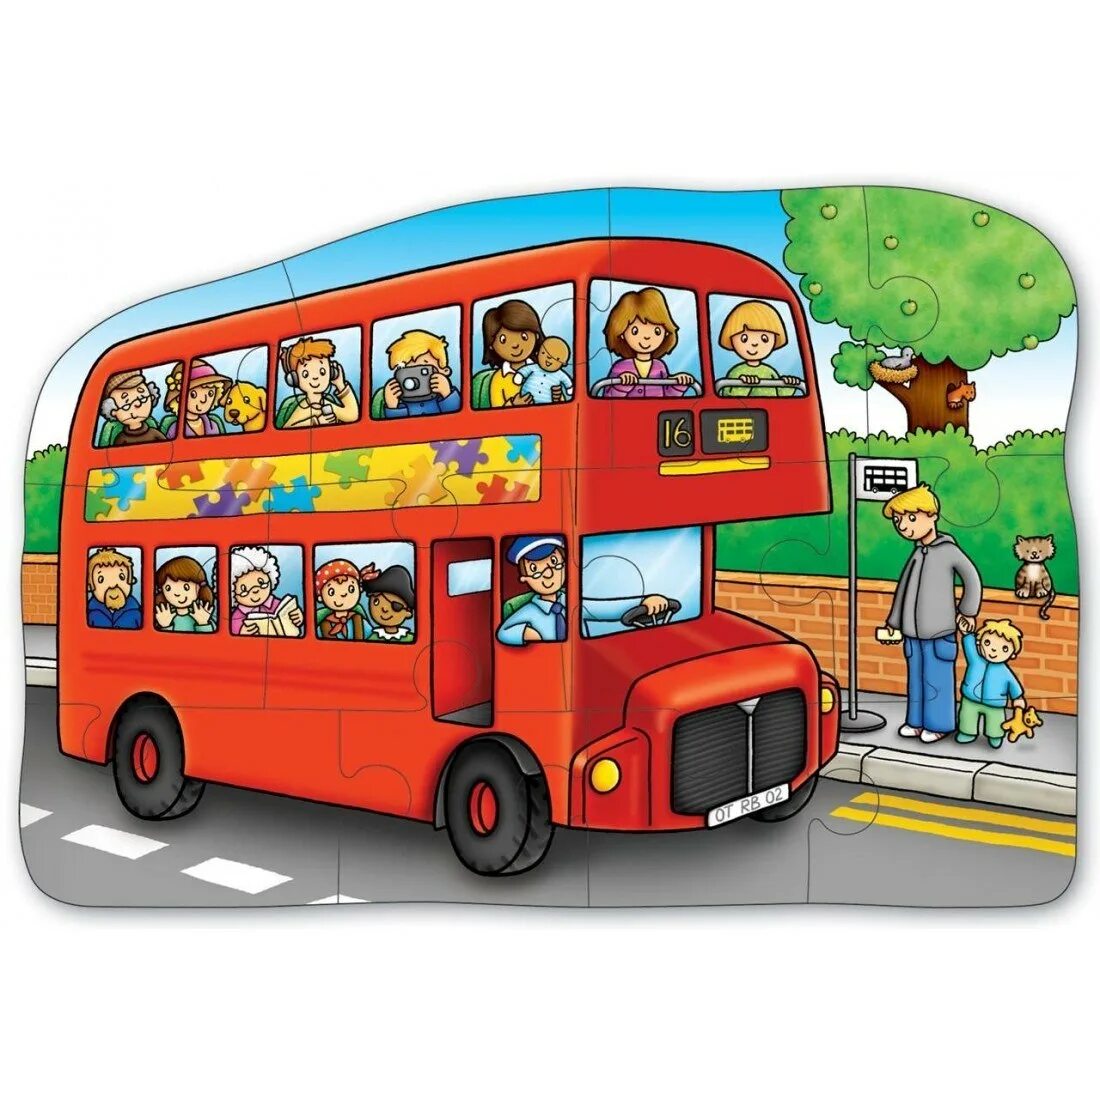 Экскурсионные автобусы для детей. Автобус для детей. Автобус для детского сада. Изображение автобуса для детей. Автобус картинка для детей.